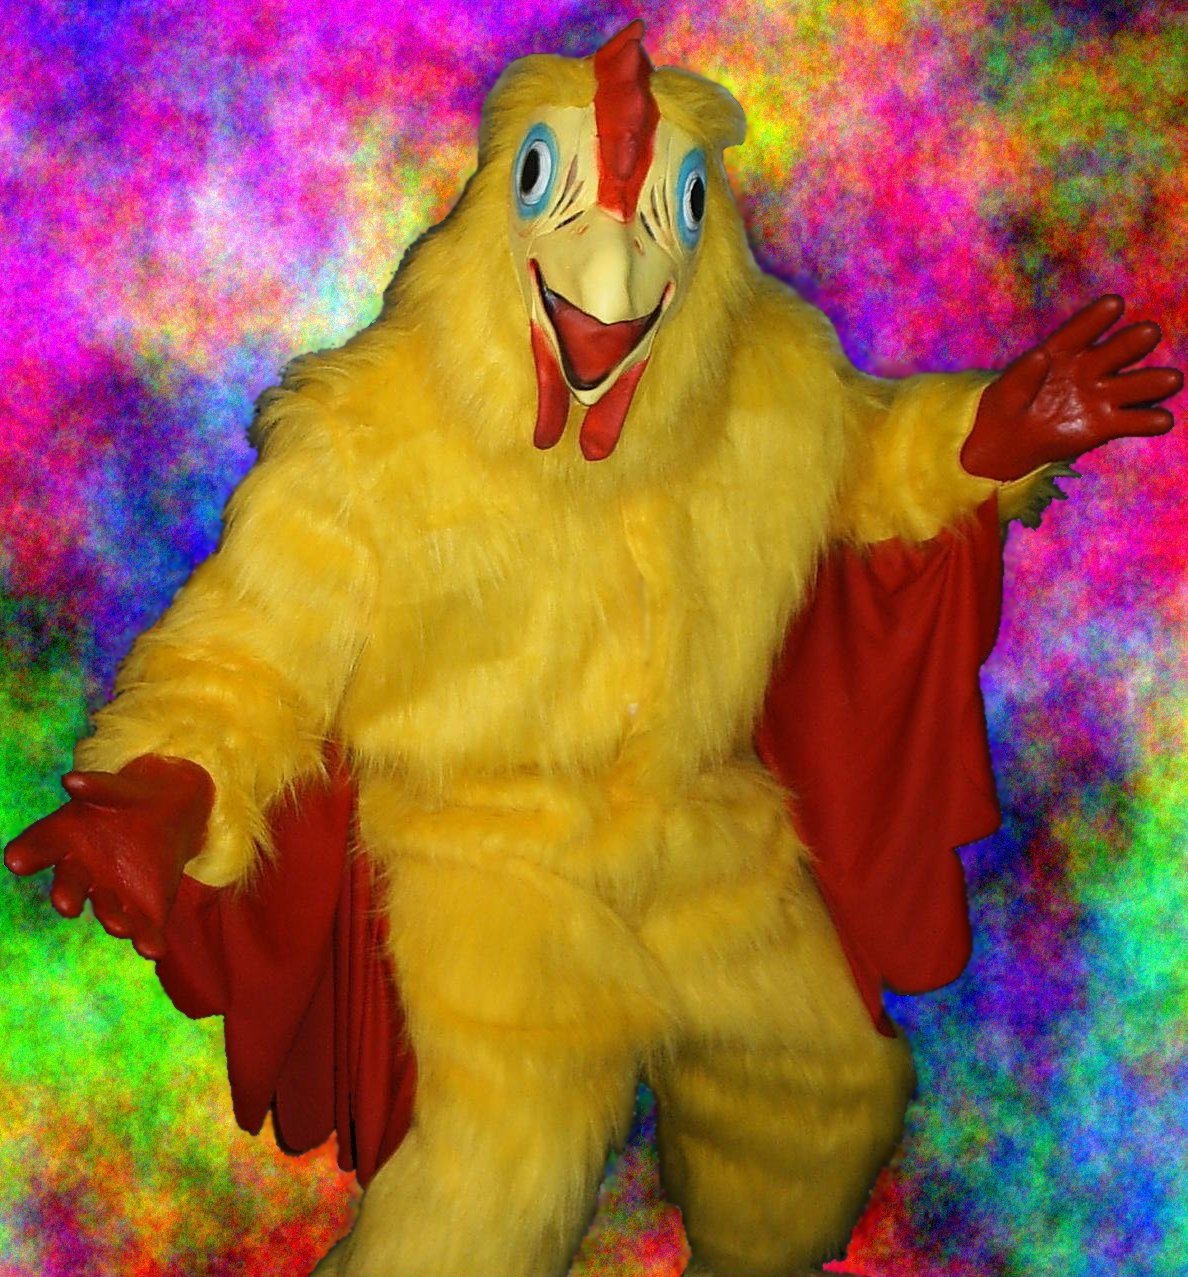 http://3.bp.blogspot.com/-ezh7WcBsimk/TbLnxGYGVSI/AAAAAAAAAlE/jBQFrIxsybk/s1600/Chicken_suit1.jpg